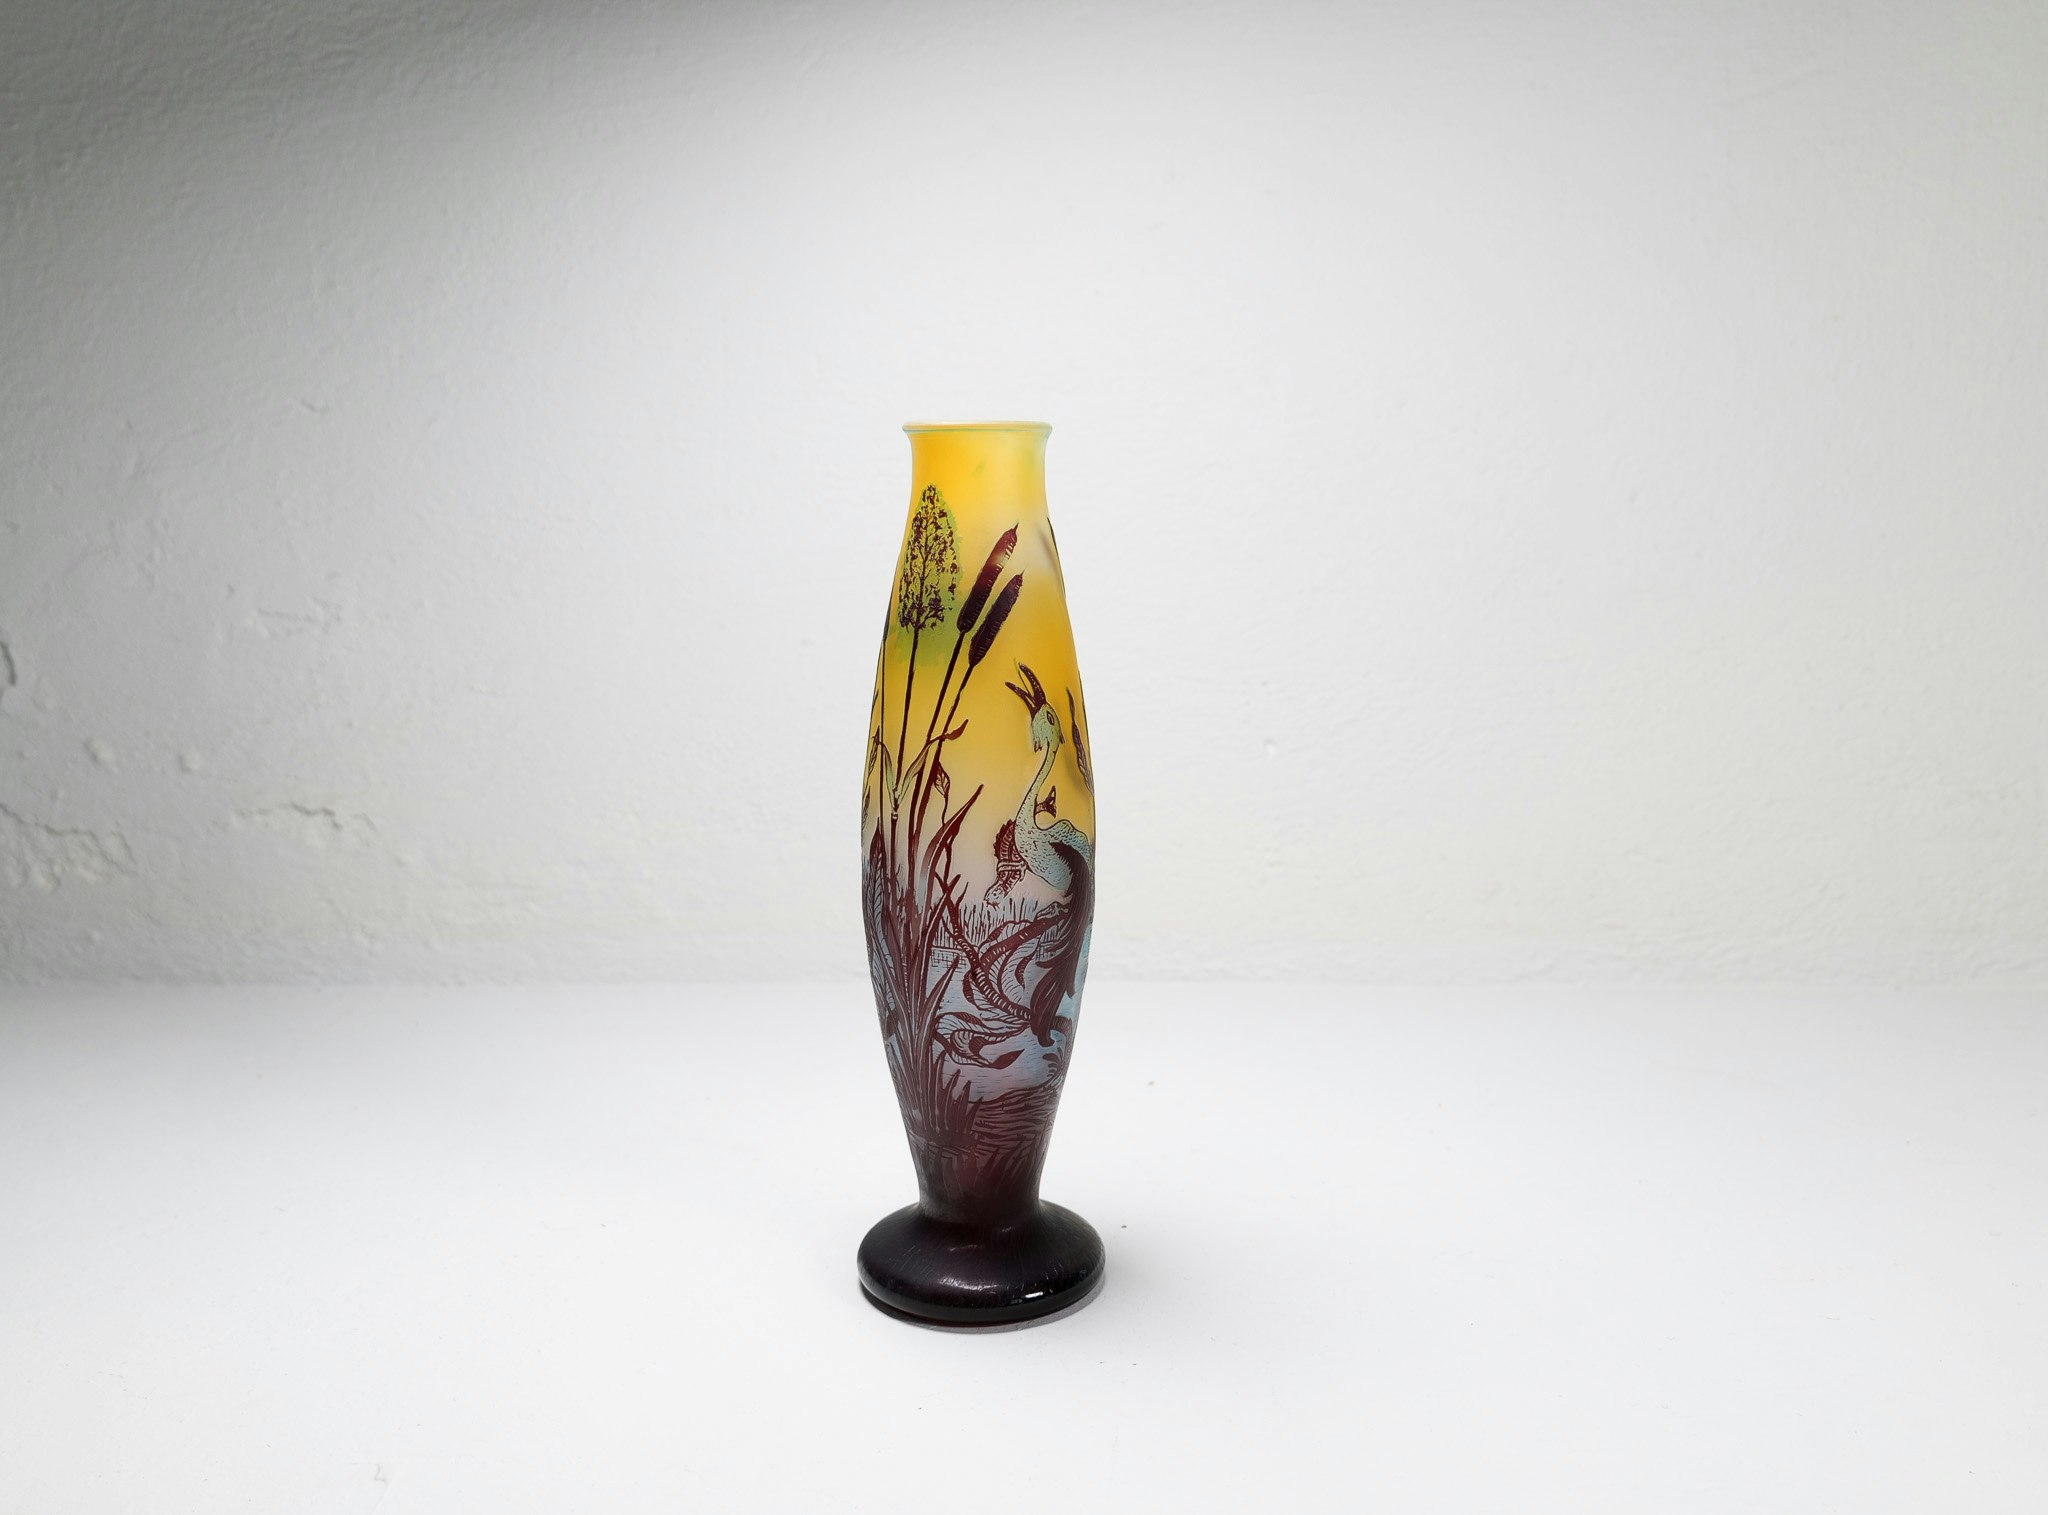 Art Nouveau Decorative Unique Carved Glass Vase Sweden 1900s